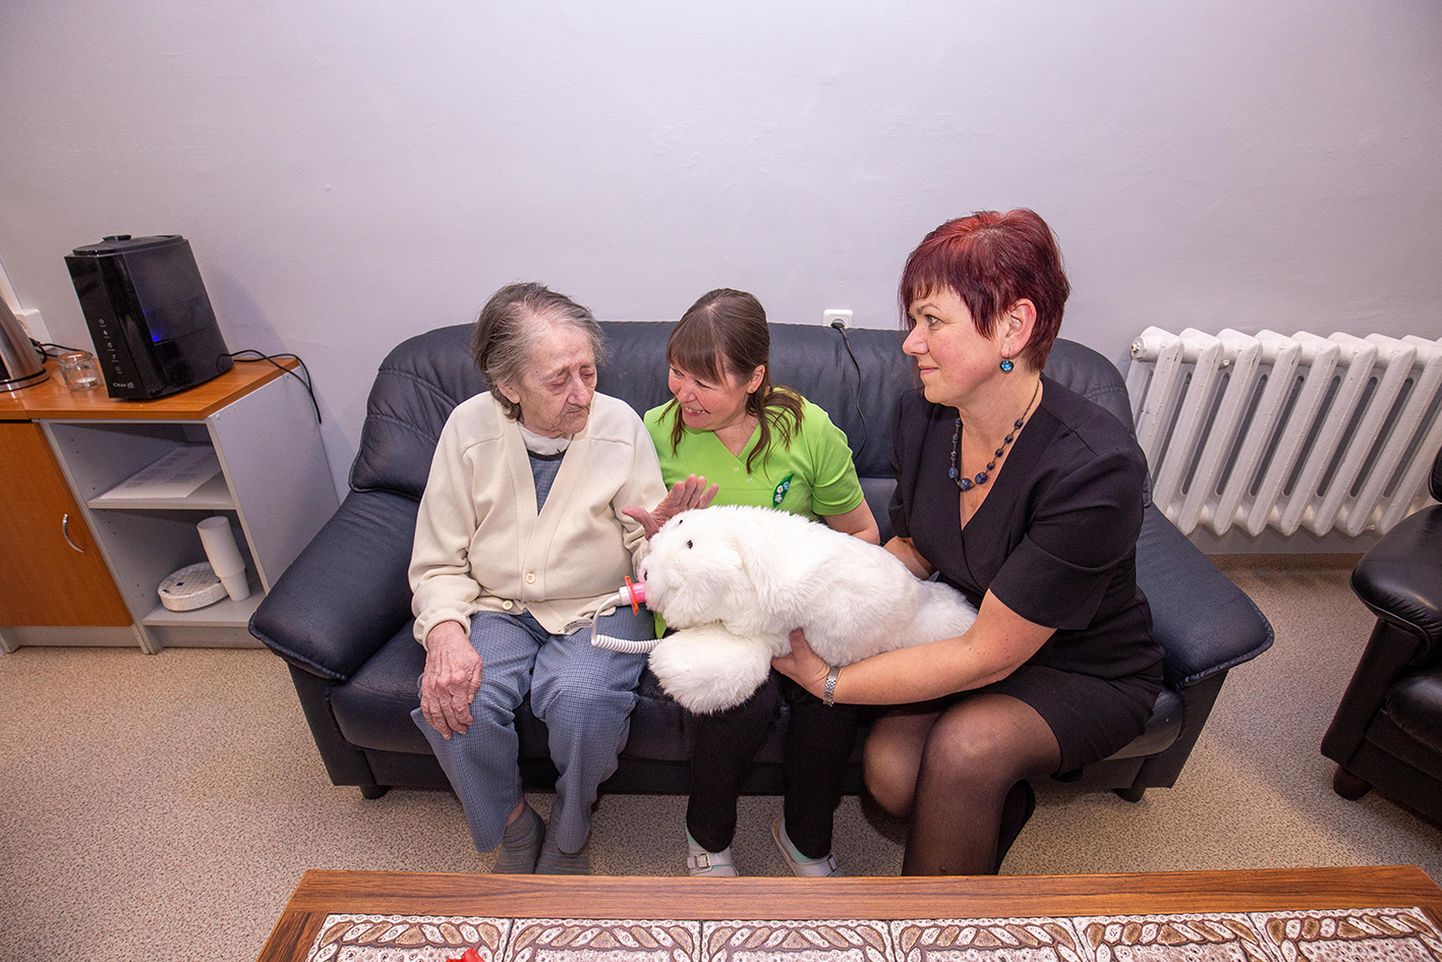 «Nii pehme, õrnpehme!» kiidab Selma (vasakul) vanemhooldajale Sirle Liidresele ja Koeru hooldekeskuse juhatajale Terje Tederile pehmet ja valge karvaga hülgepoega paitades. See on teraapiarobot, mis reageerib puudutustele ja häälele neile omasel moel.